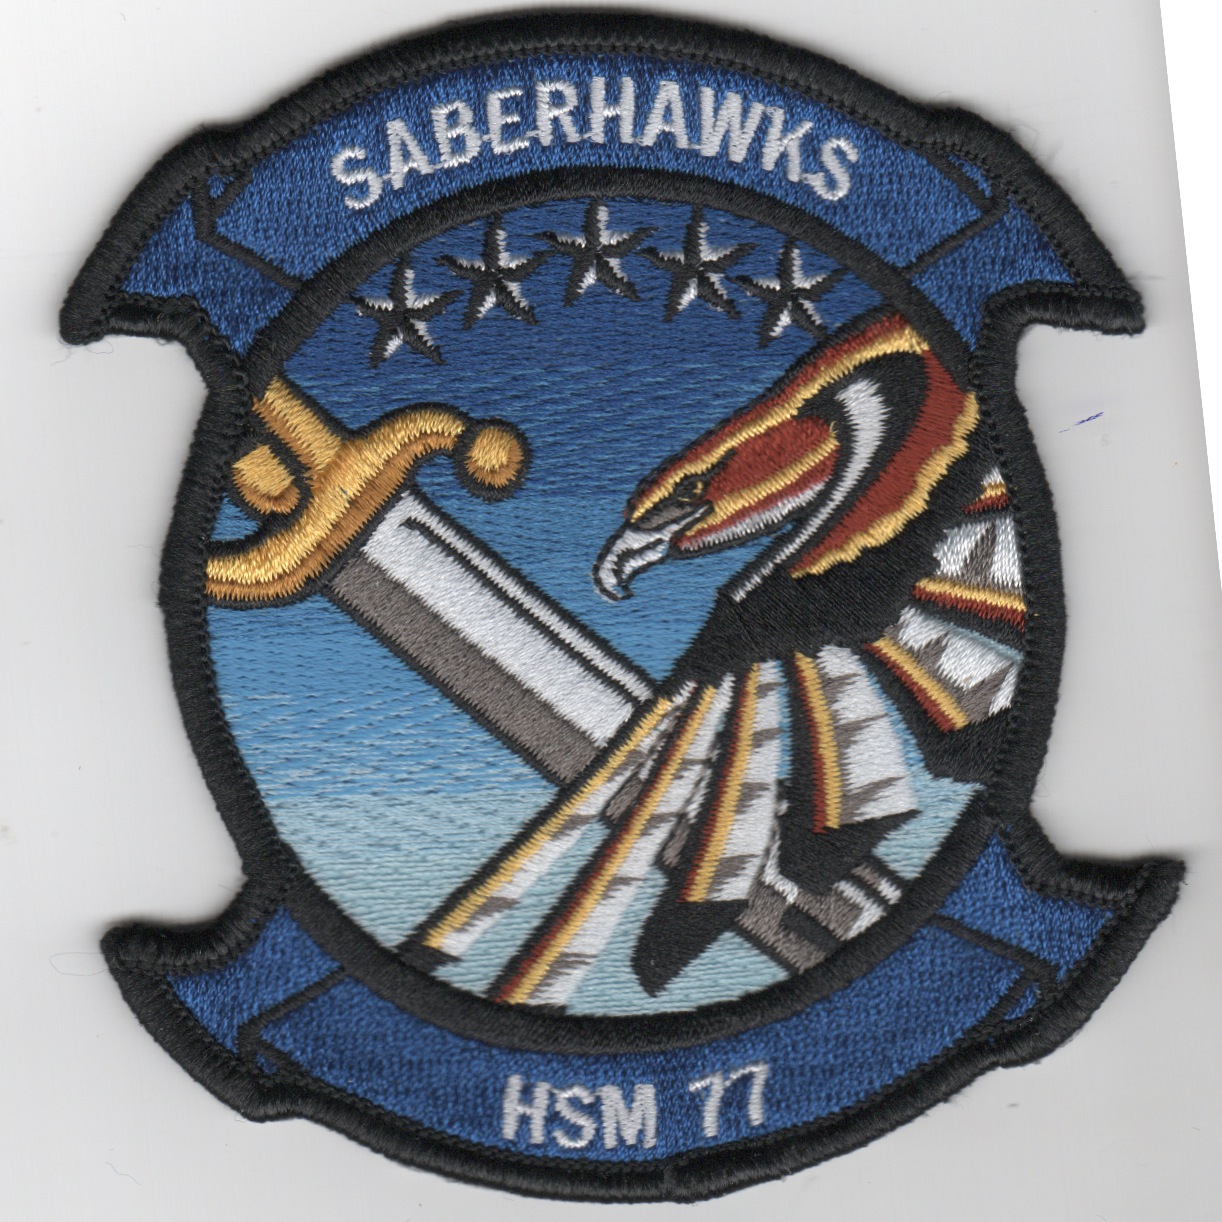 HSM-77 Squadron Patch (Blue)